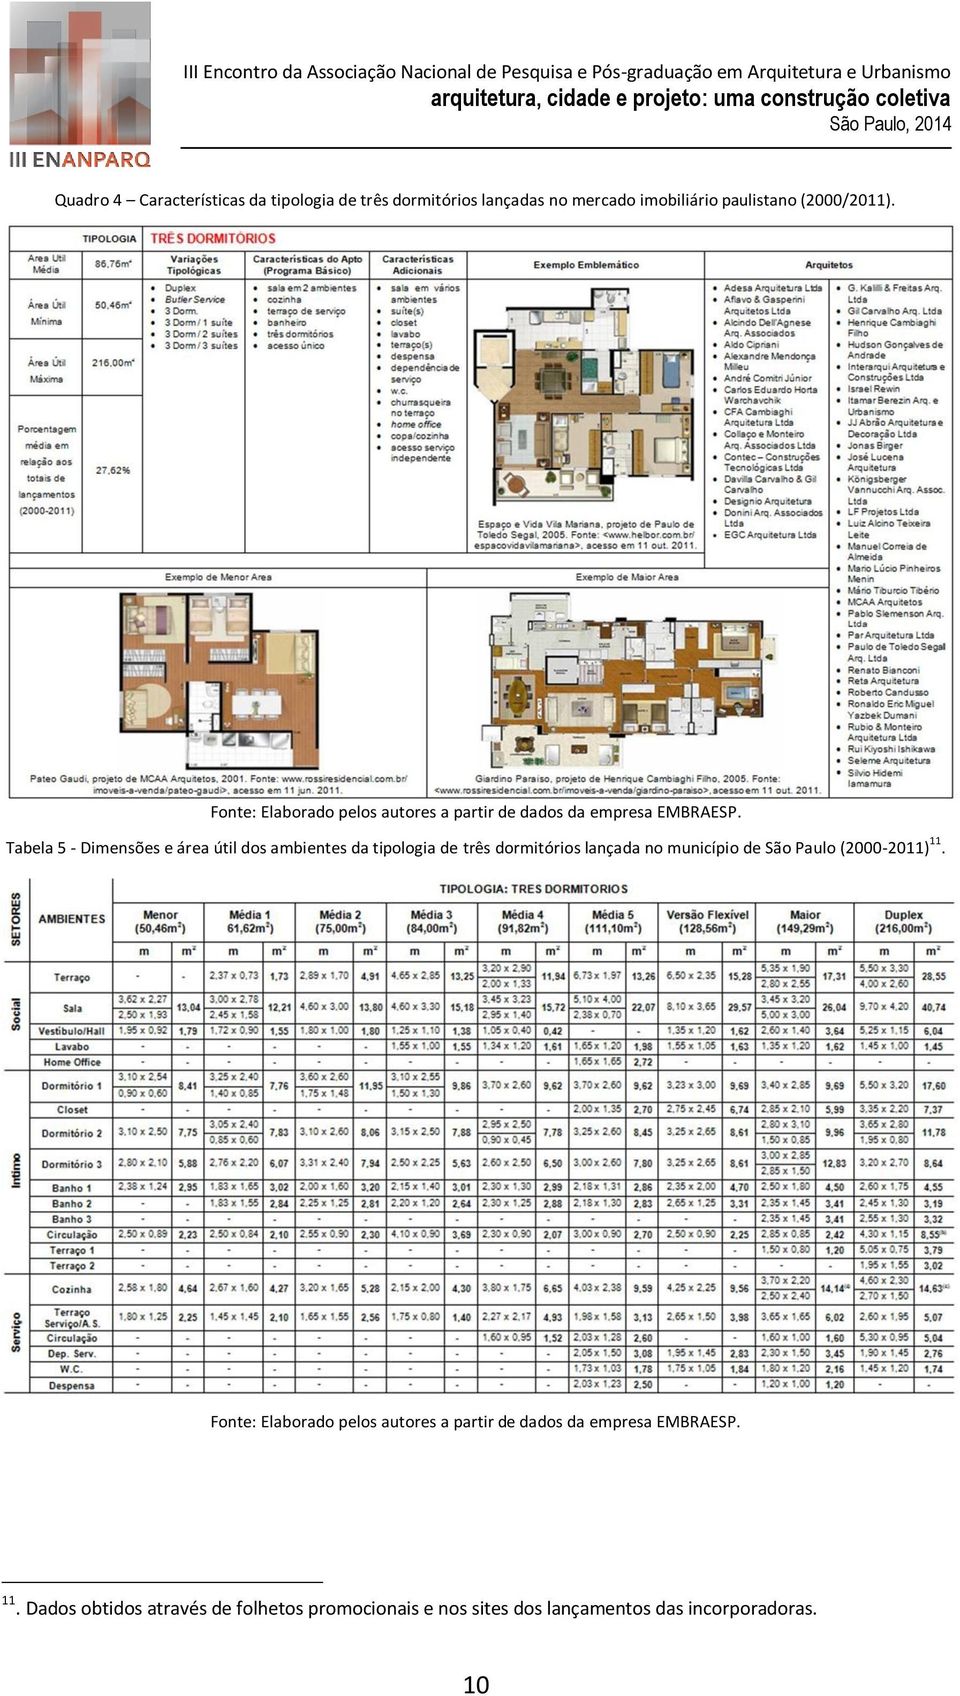 Tabela 5 - Dimensões e área útil dos ambientes da tipologia de três dormitórios